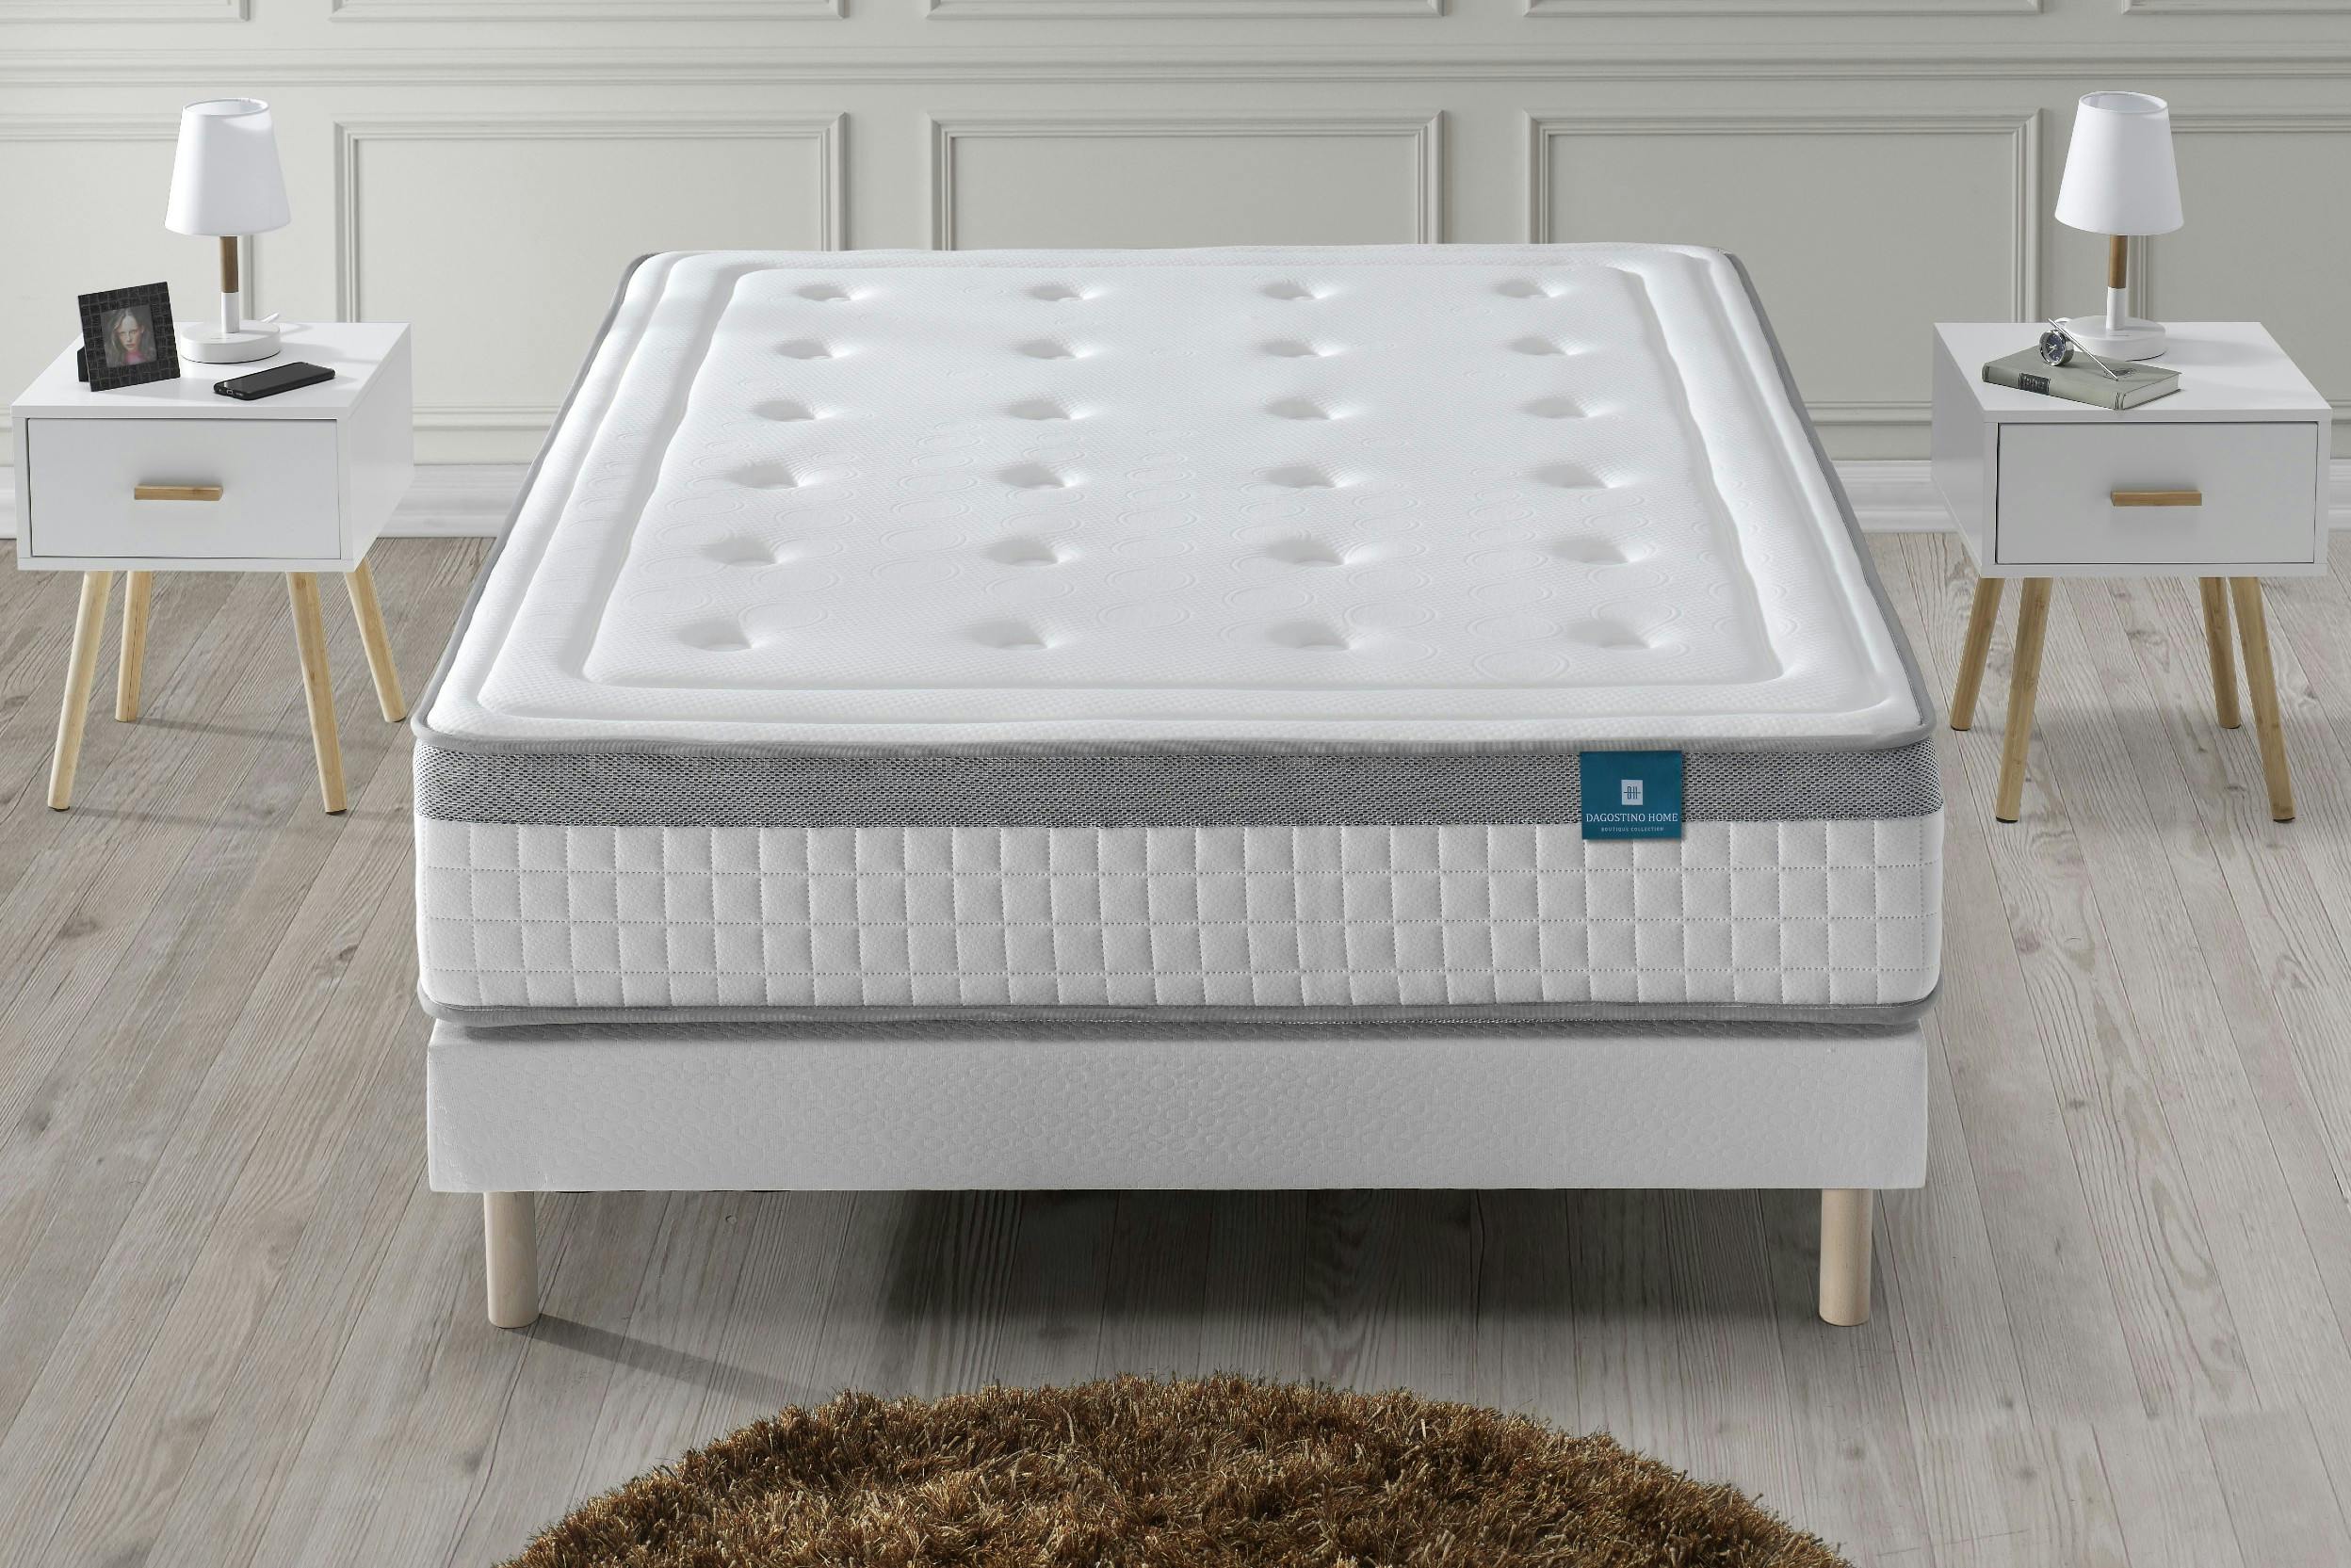 Einfaches Polsterbett mit dicker Gelmatratze, davor ein runder Teppich, links und rechts Nachttische